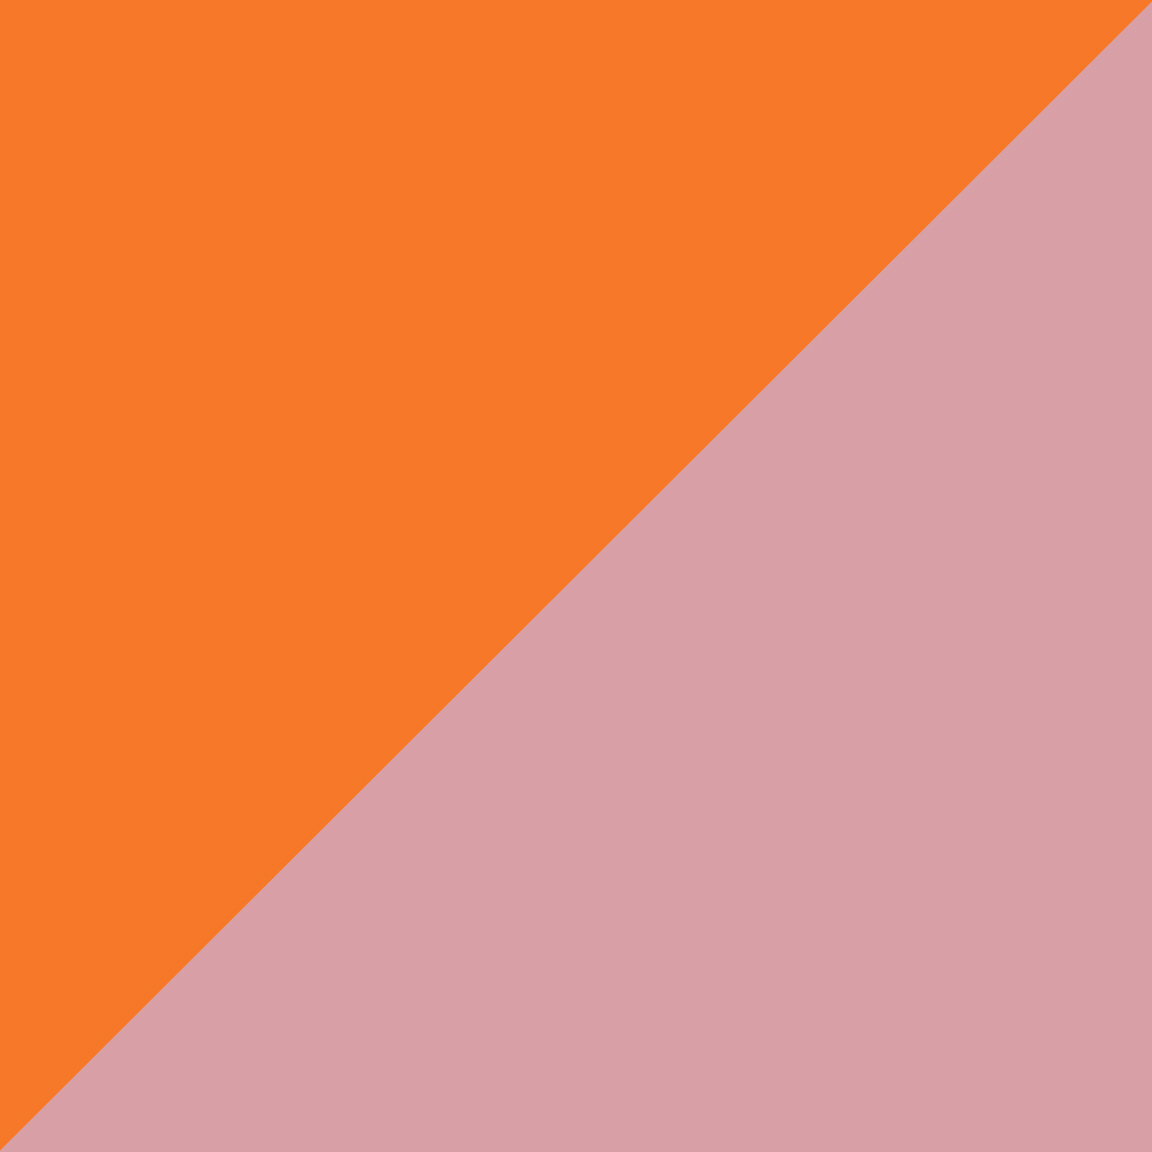 Pastel Orange/Light Pink